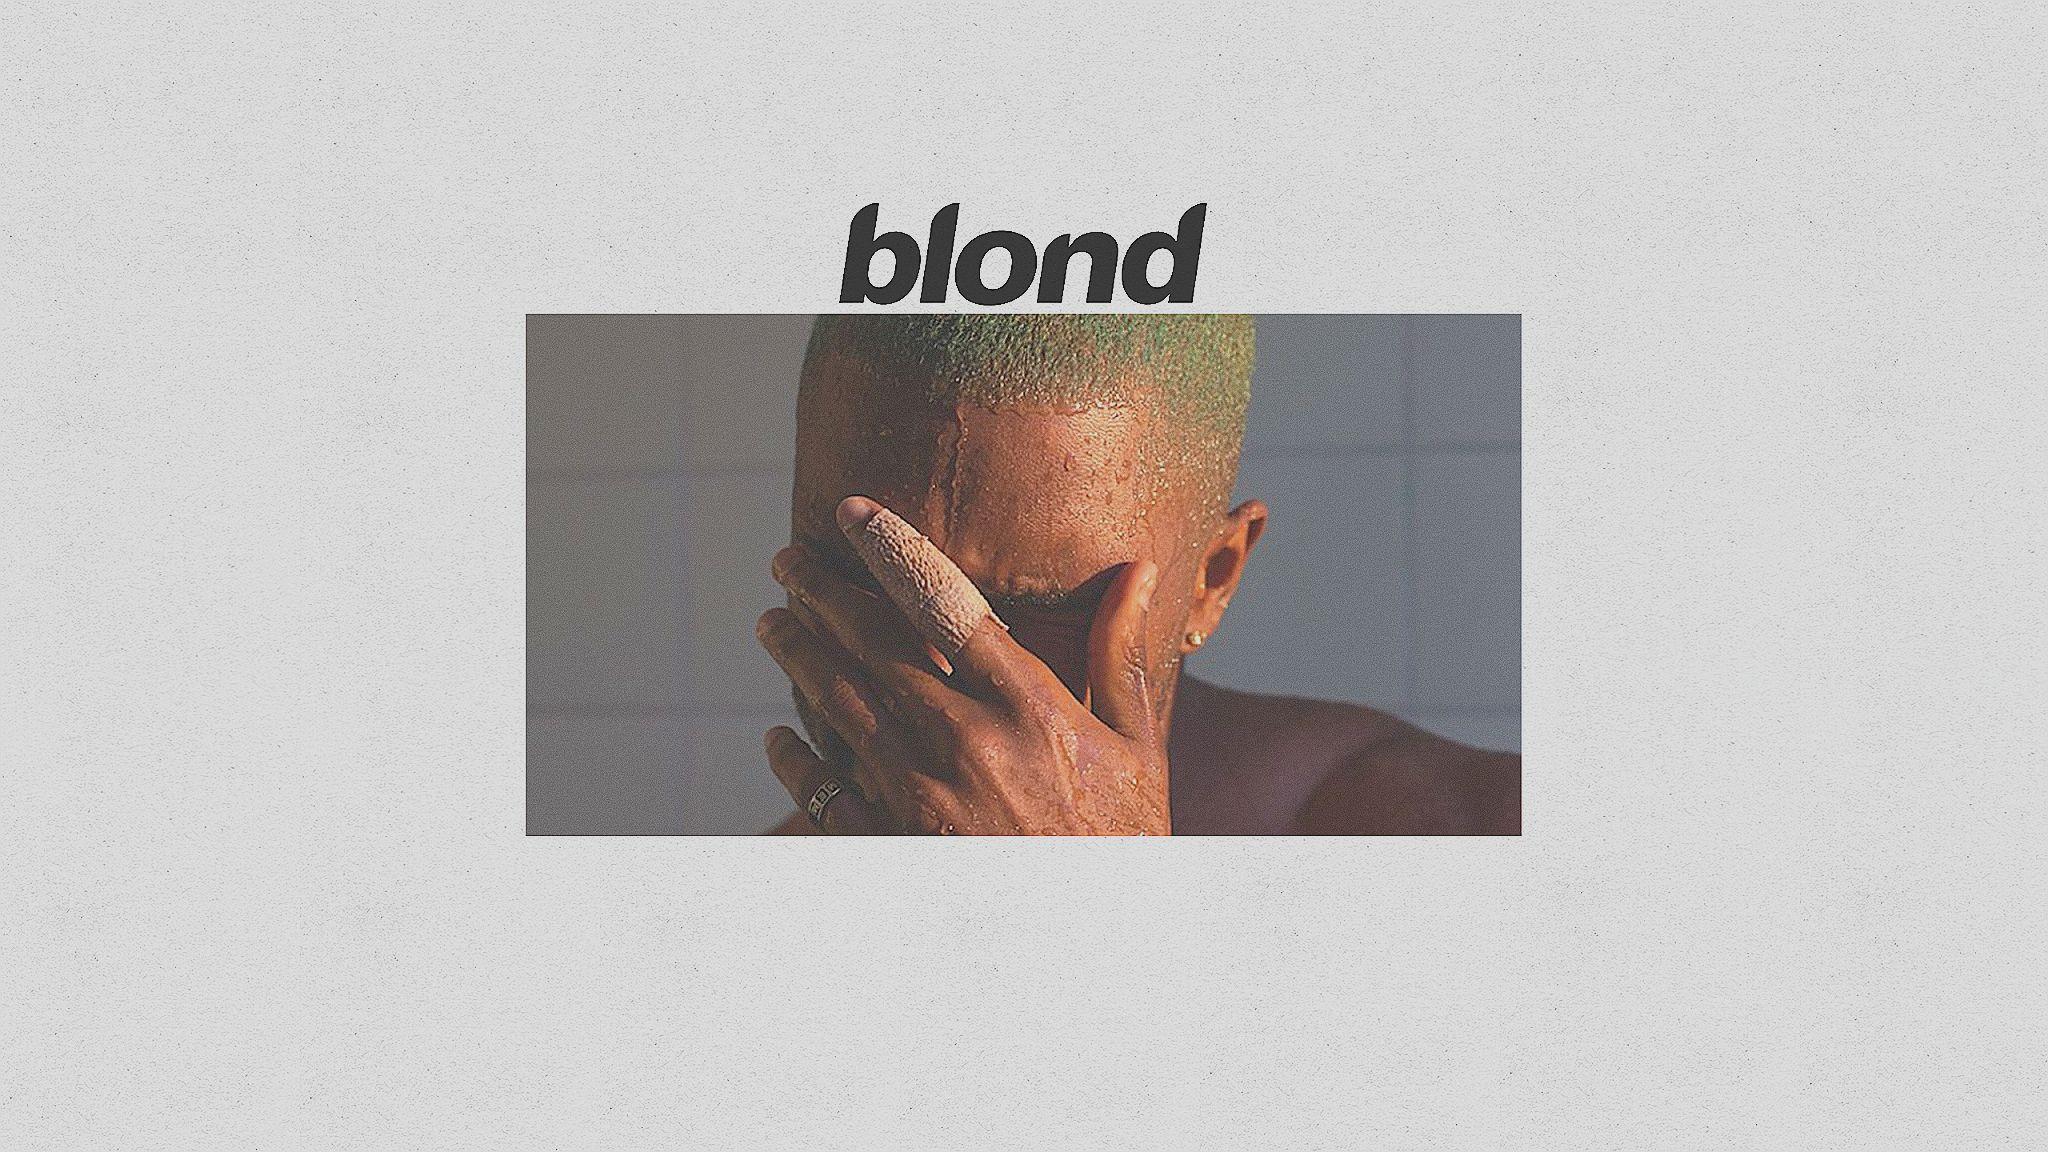 frank ocean blonde album download zip